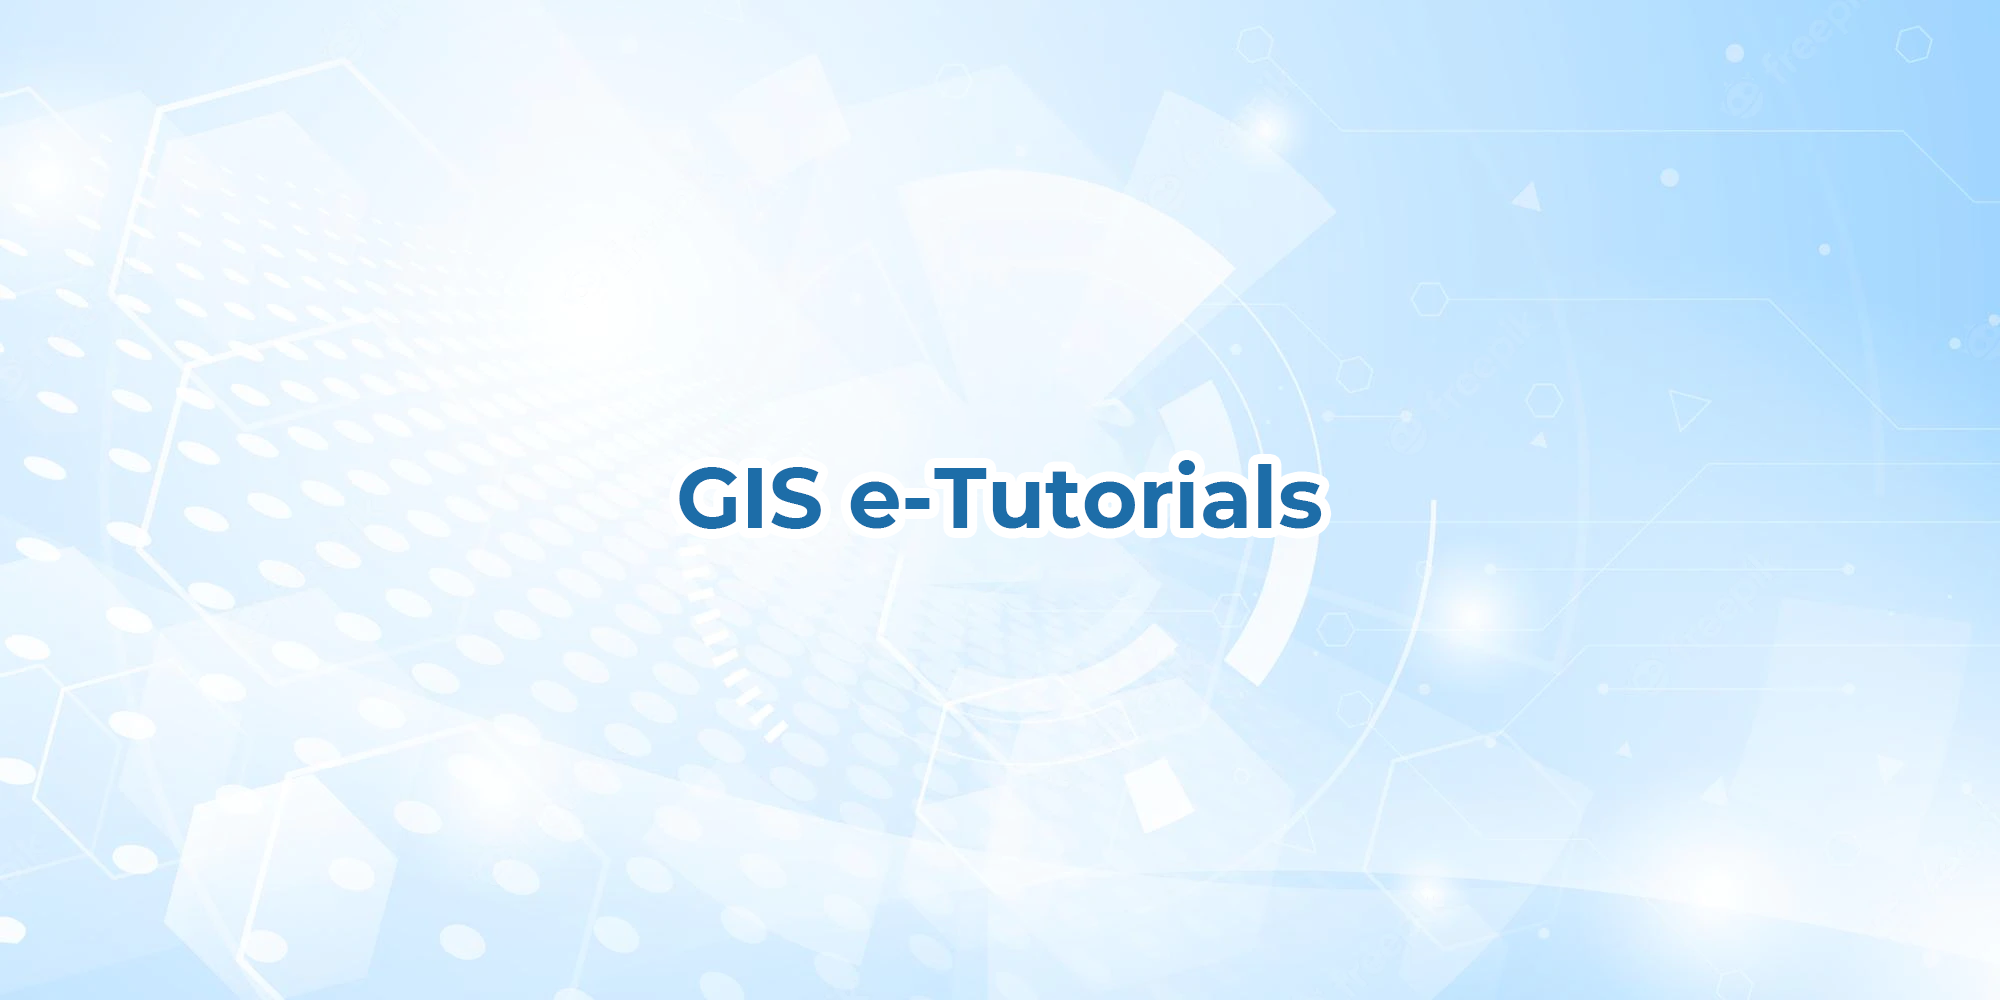 GIS e-Tutorials